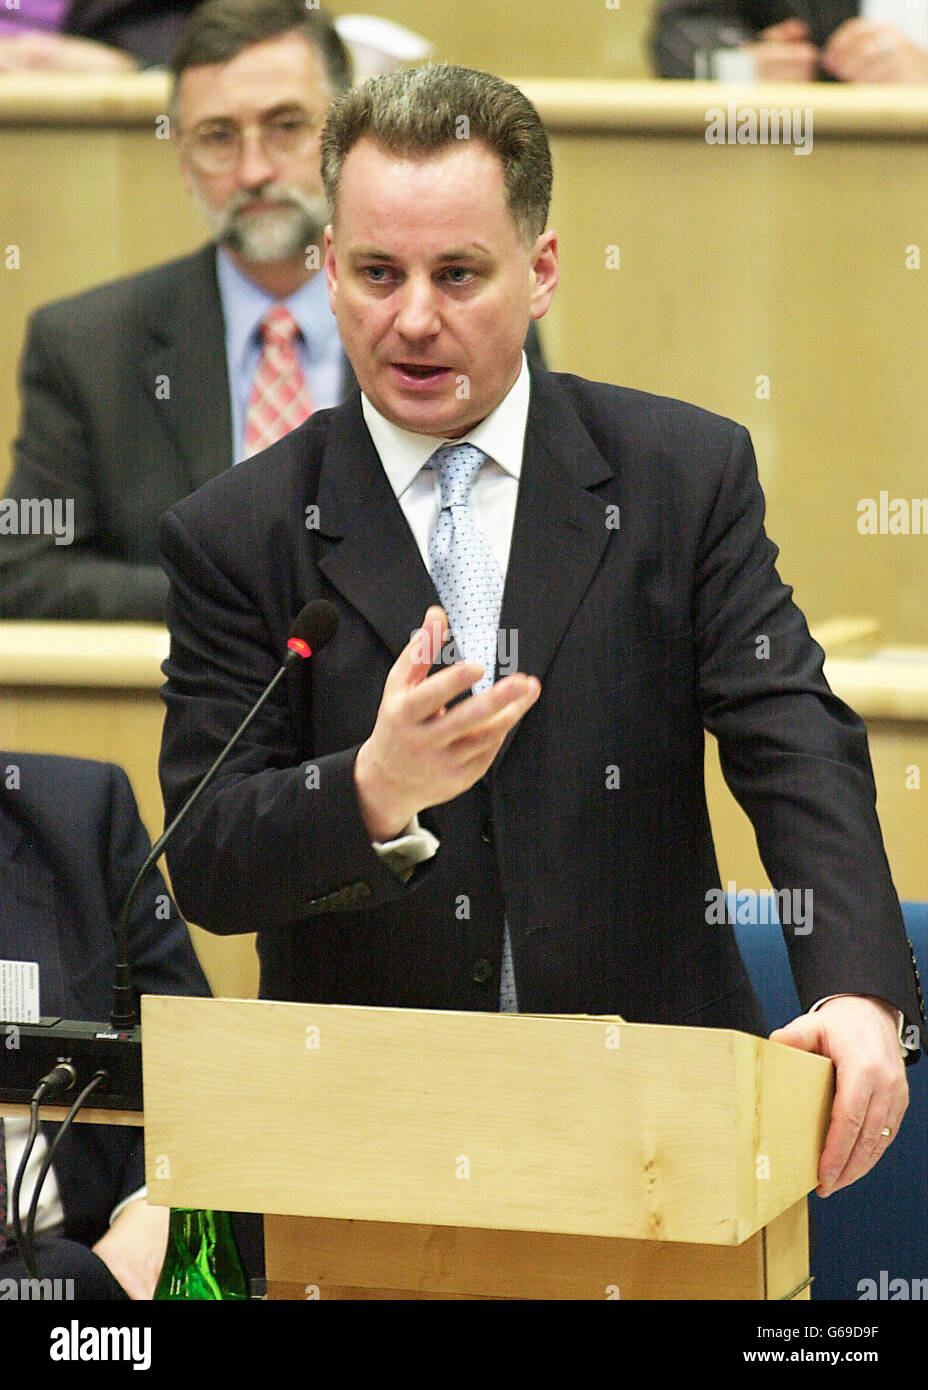 Le premier ministre Jack McConnell, à l'heure des questions, parle des forces écossaises déployées au Moyen-Orient. Banque D'Images